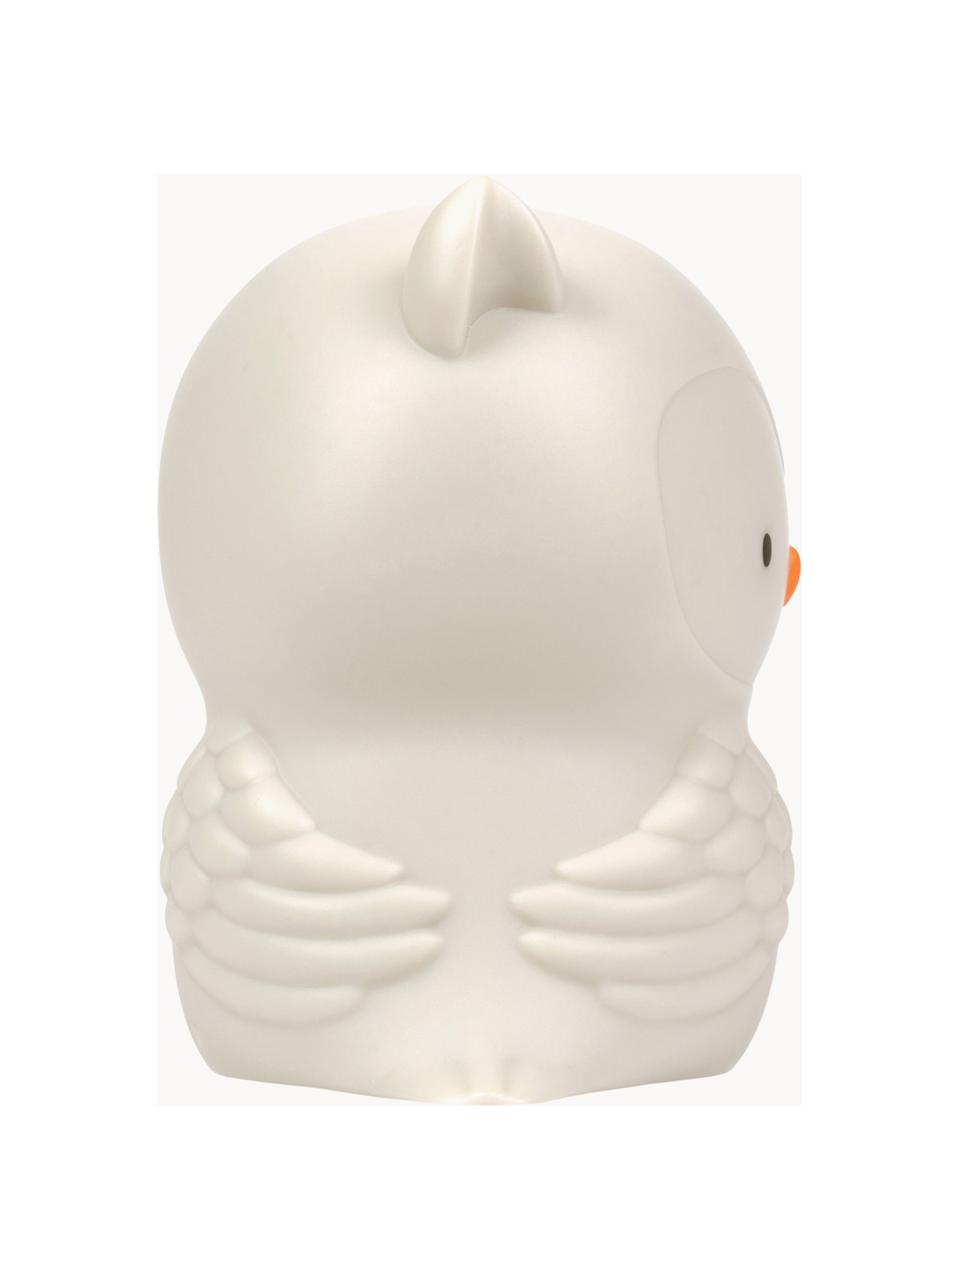 Lámpara infantil regulable con función de temporizador Owl, Plástico, Beige claro, An 12 x Al 12 cm